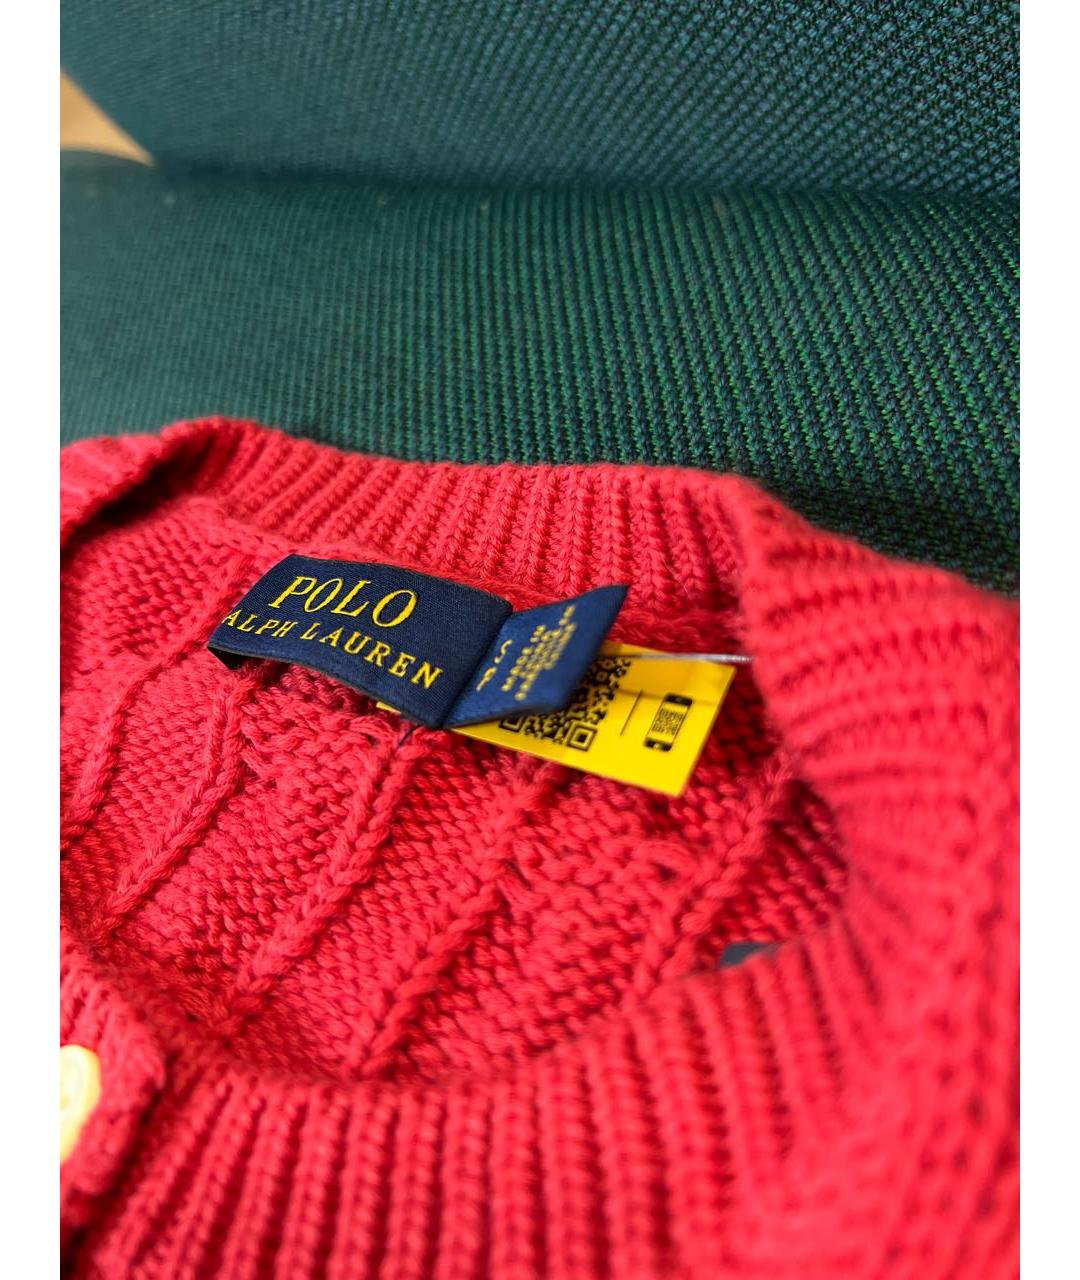 POLO RALPH LAUREN Красный хлопковый джемпер / свитер, фото 3